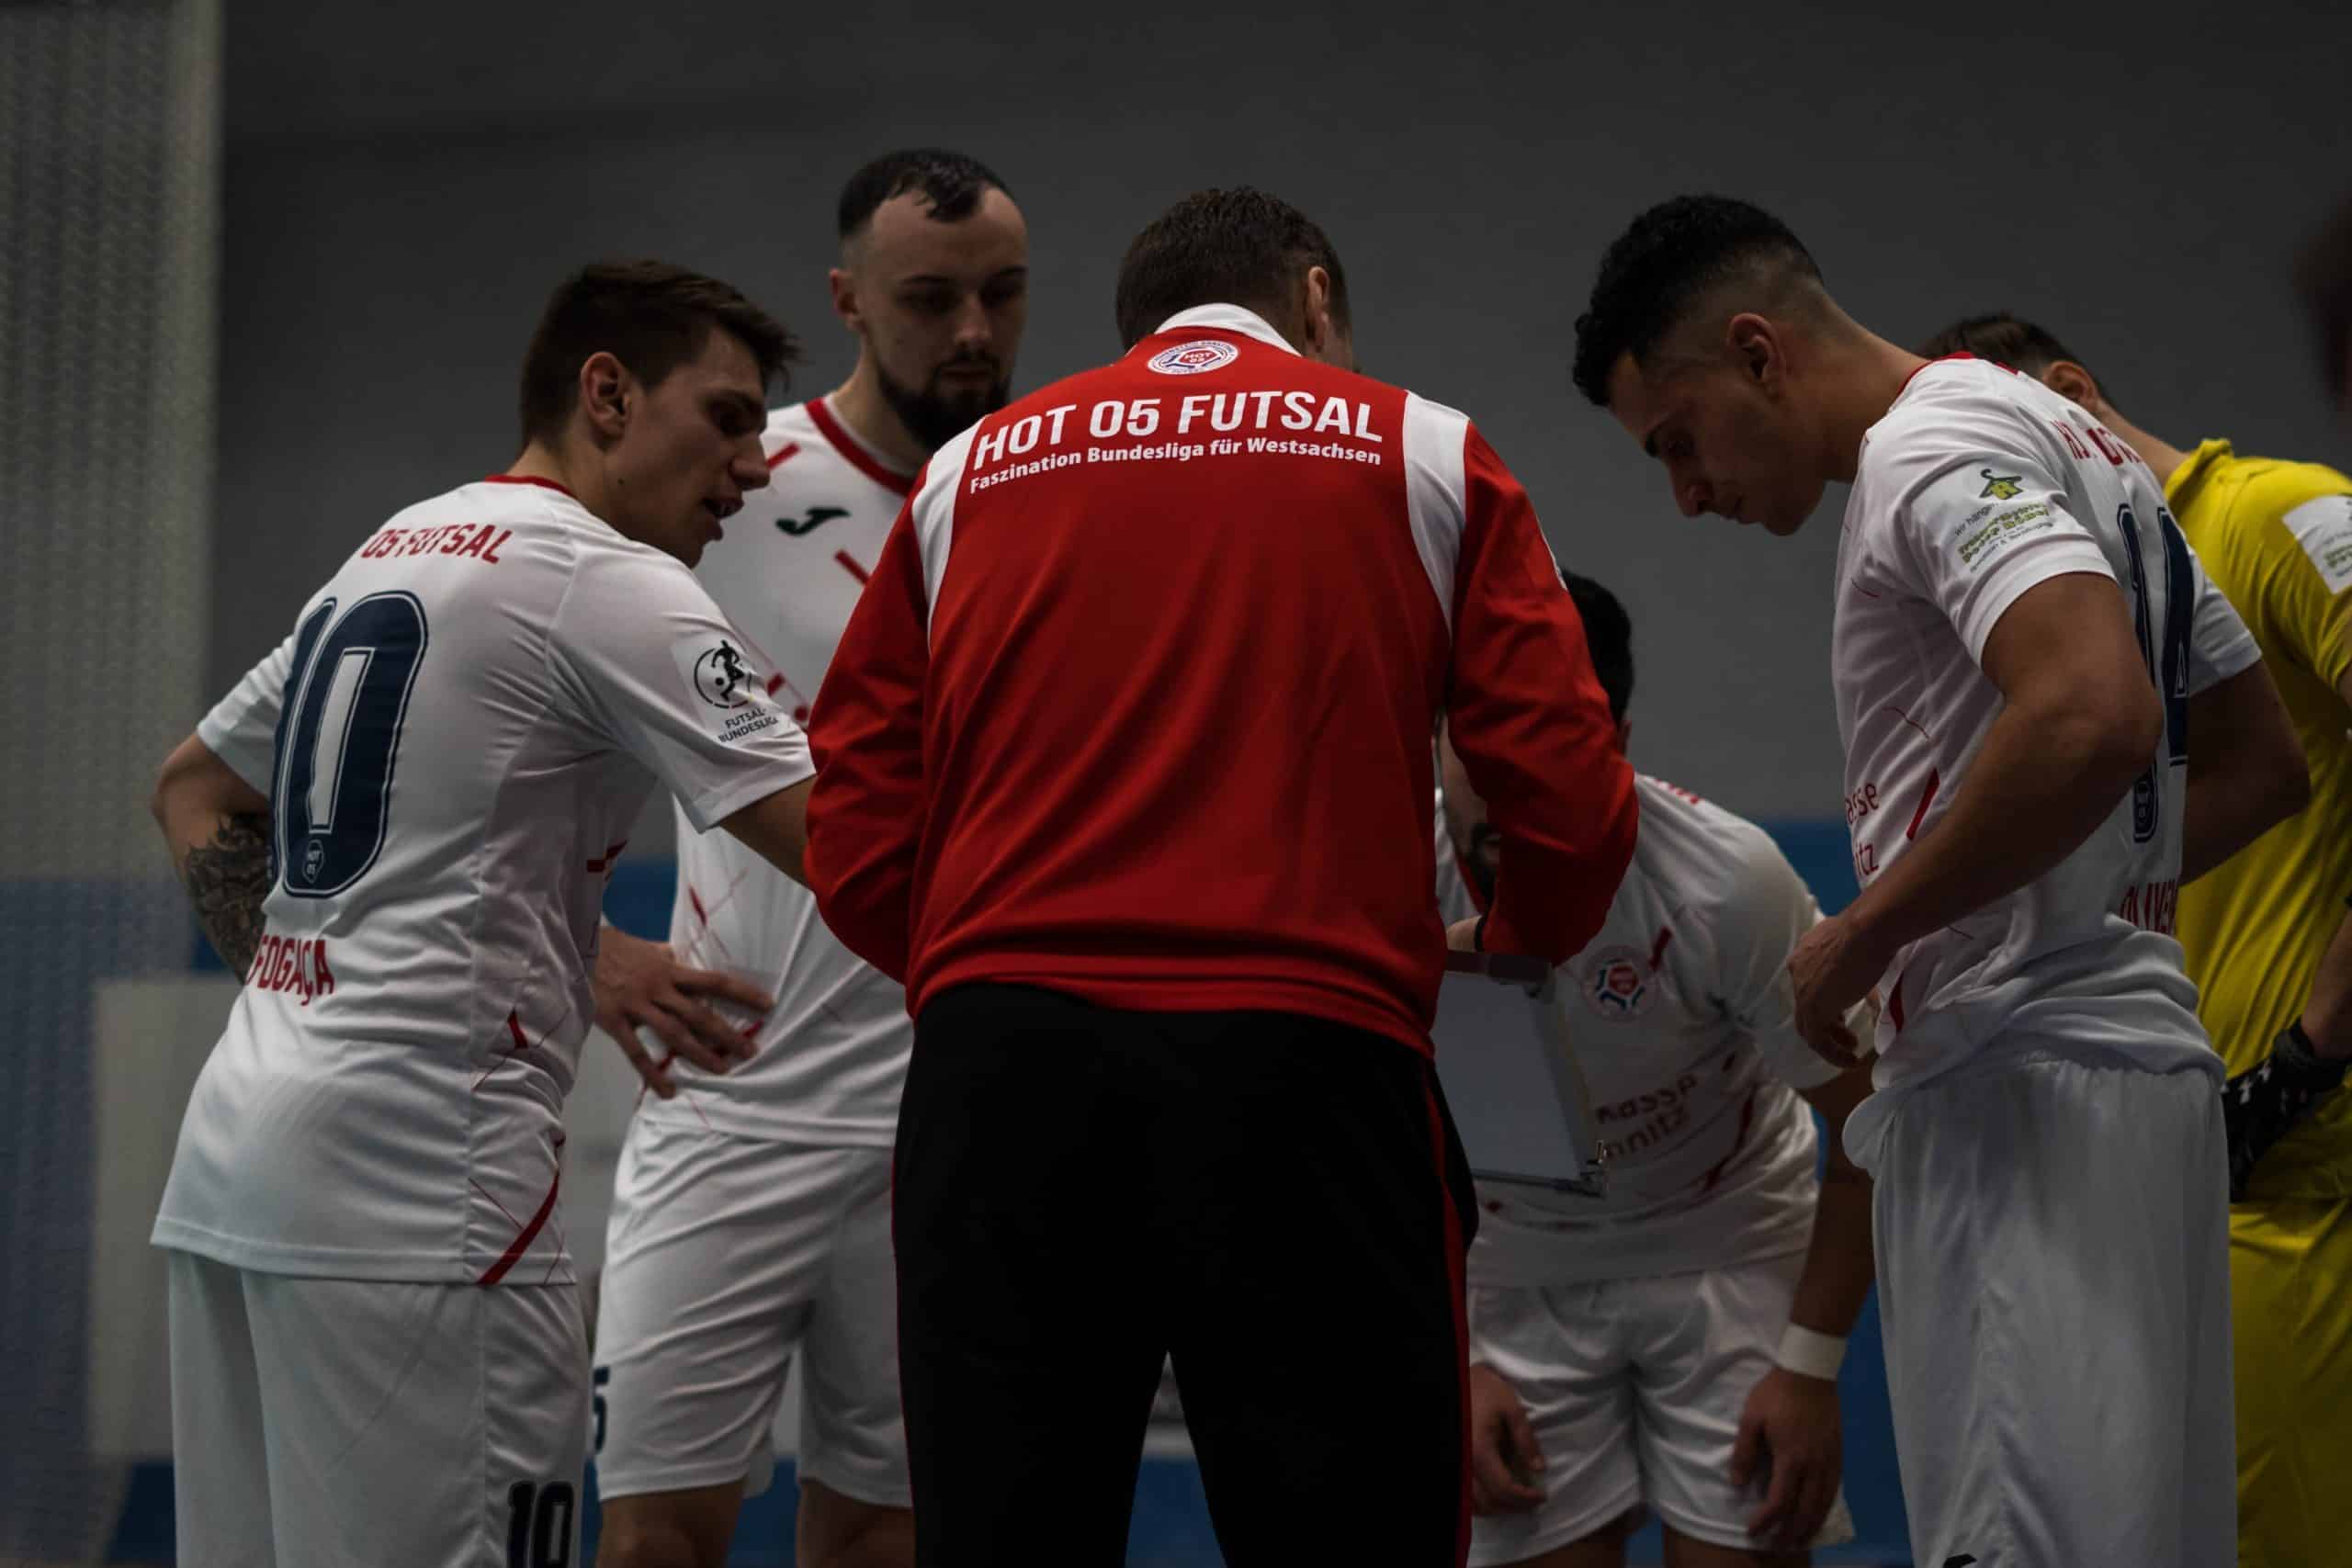 DSC04581 1 scaled - Die Futsal-Bundesliga geht in die Playoffs | Eine spannende Premierensaison im Überblick